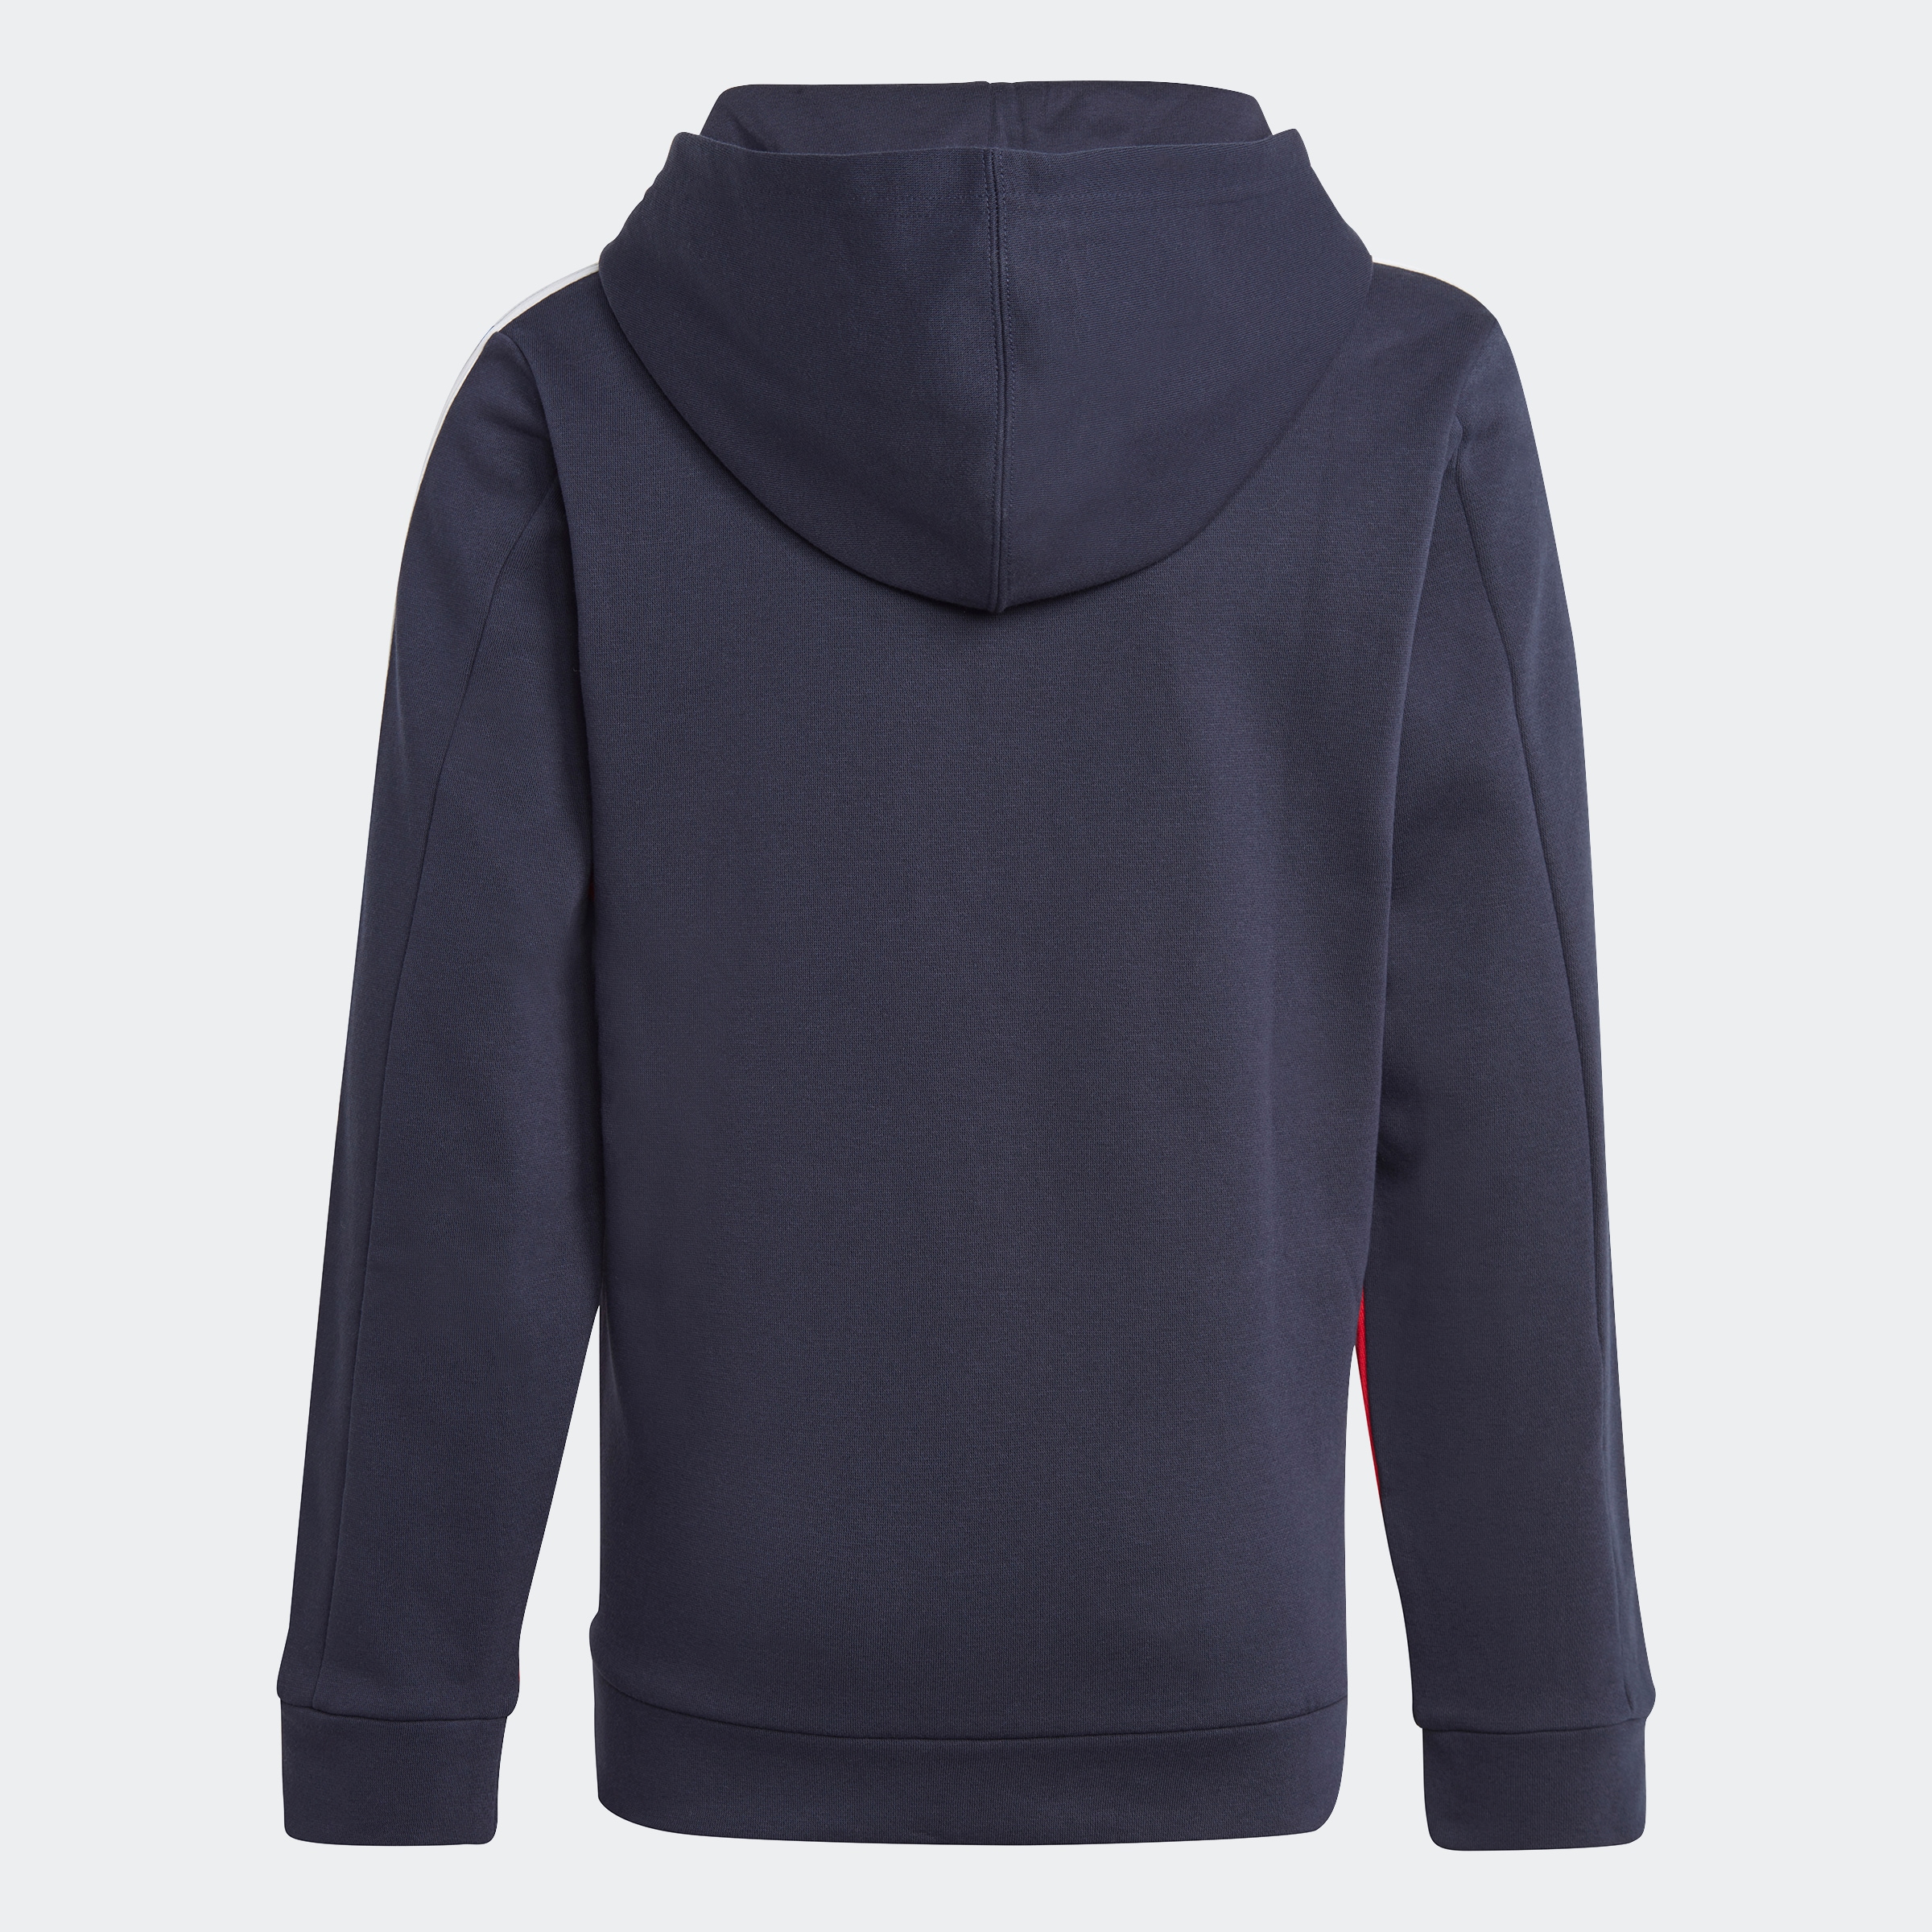 3STREIFEN Online im »COLORBLOCK Sportswear Shop Sweatshirt adidas HOODIE« OTTO